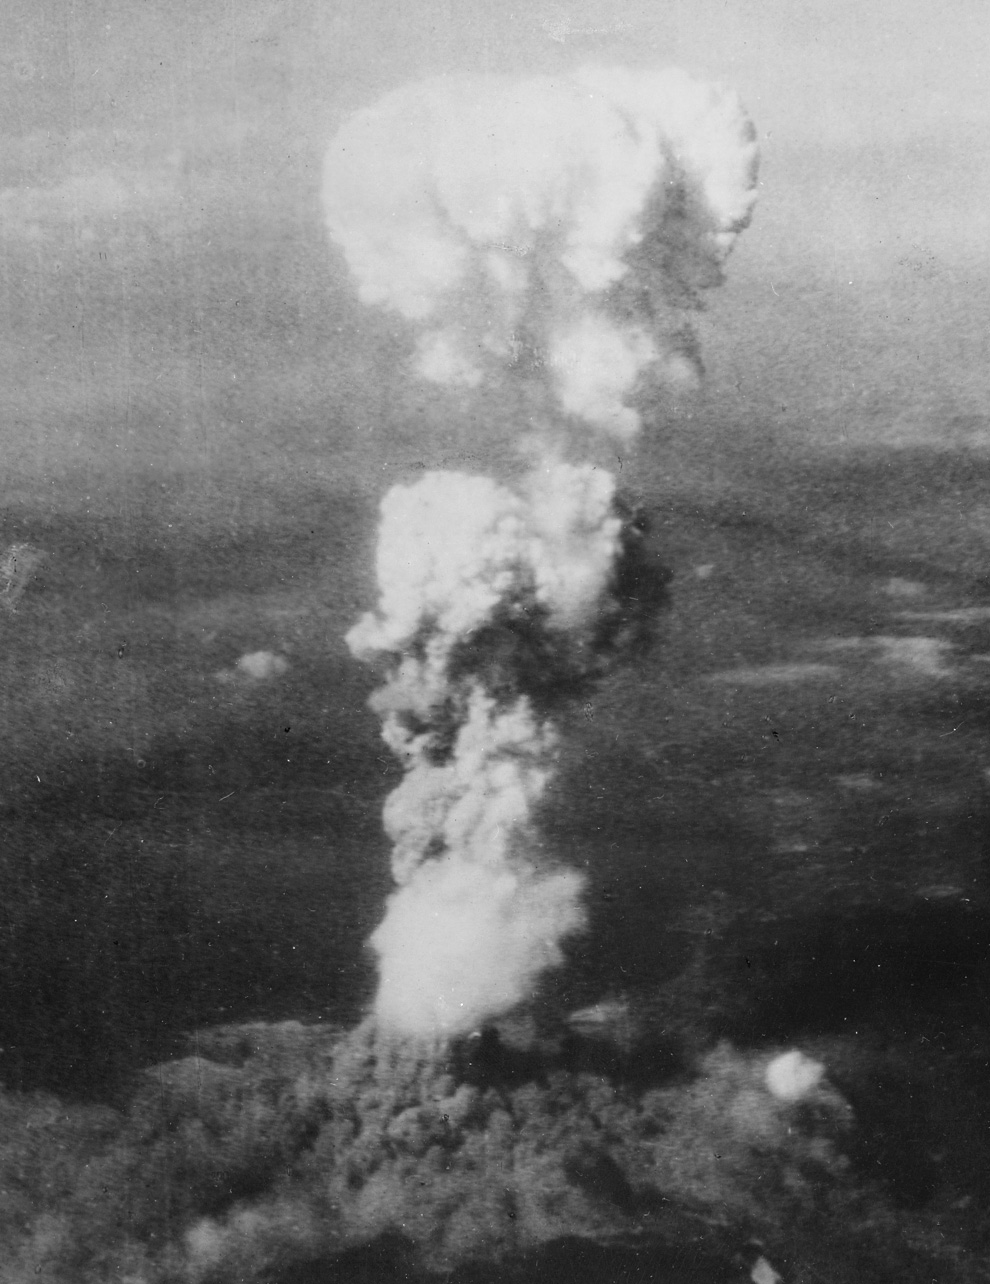 8. Растущий ядерный «гриб» над Хиросимой вскоре после 8:15, 5 августа 1945. Когда порция урана в бомбе прошла стадию расщепления, она мгновенно была превращена в энергию 15 килотонн тротила, нагрев массивный огненный шар до температуры 3 980 градусов по Цельсию. Нагретый до предела воздух и дым быстро поднялся в атмосфере, словно огромный пузырь, поднимая за собой столп дыма. К тому времени, как было сделано это фото, смог поднялся на высоту 6 096,00 м над Хиросимой, в то время как дым от взрыва первой атомной бомбы разлетелся на 3 048,00 м у основания колонны. (U.S. National Archives)